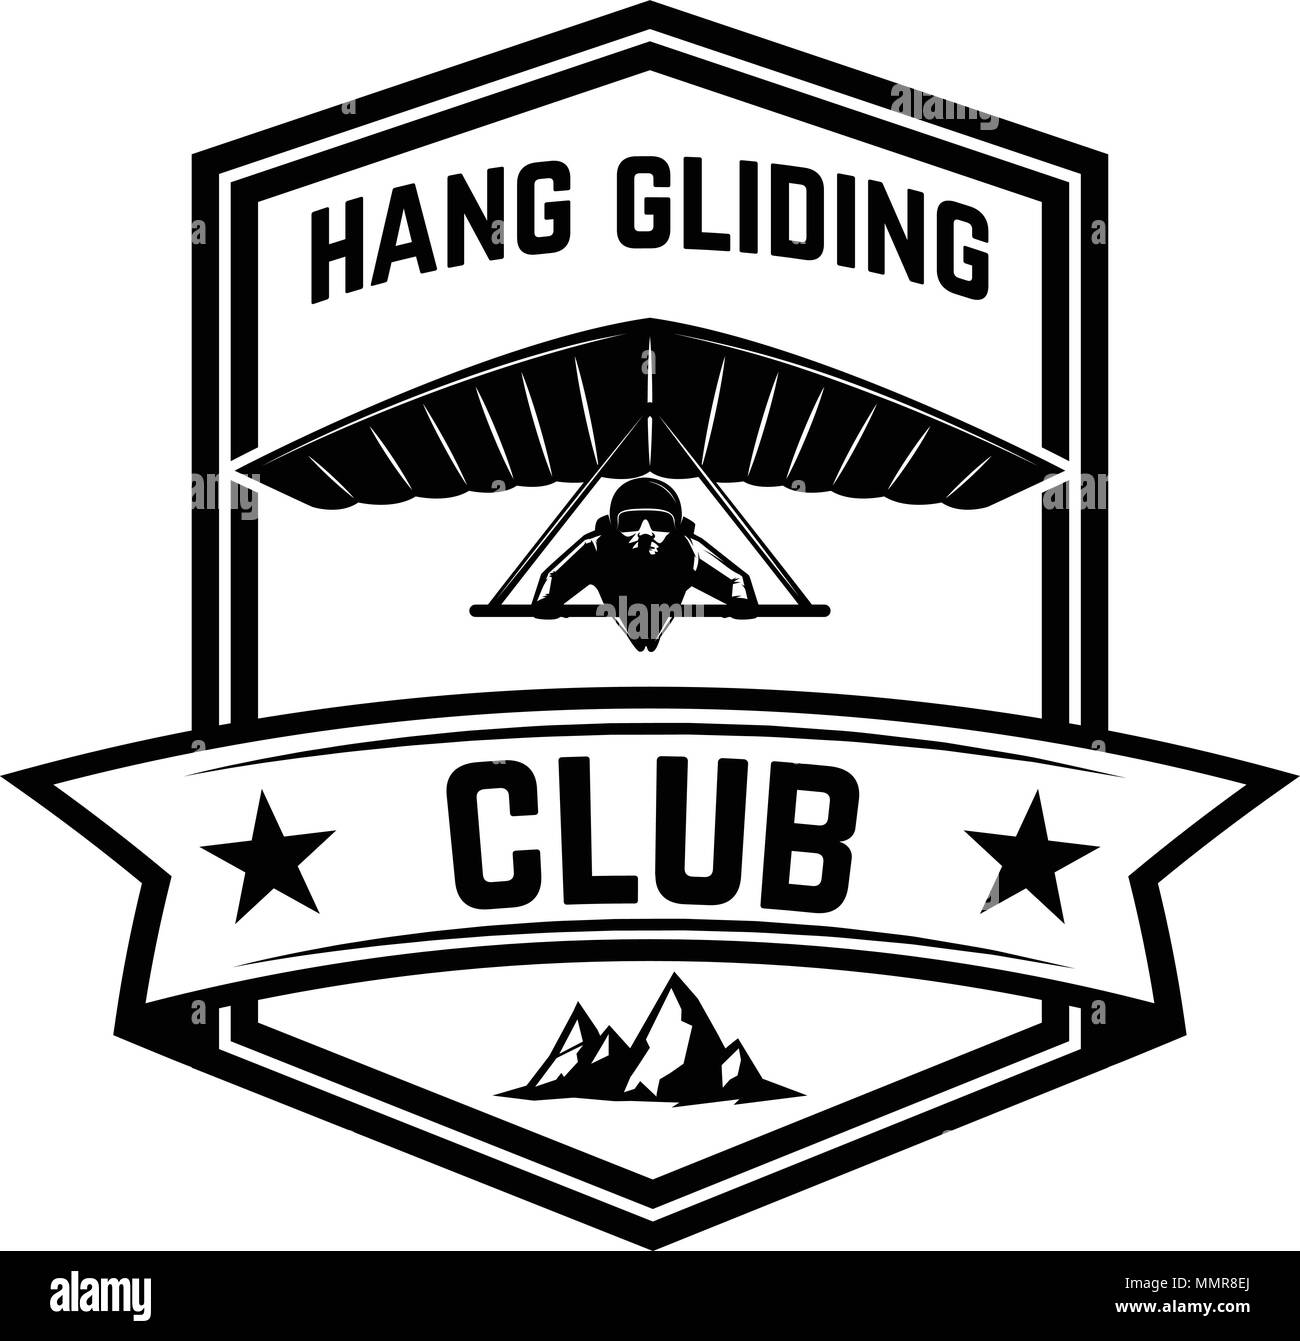 Hang gliding club emblem template. Design element for logo, label, emblem, sign. Vector illustration Stock Vector